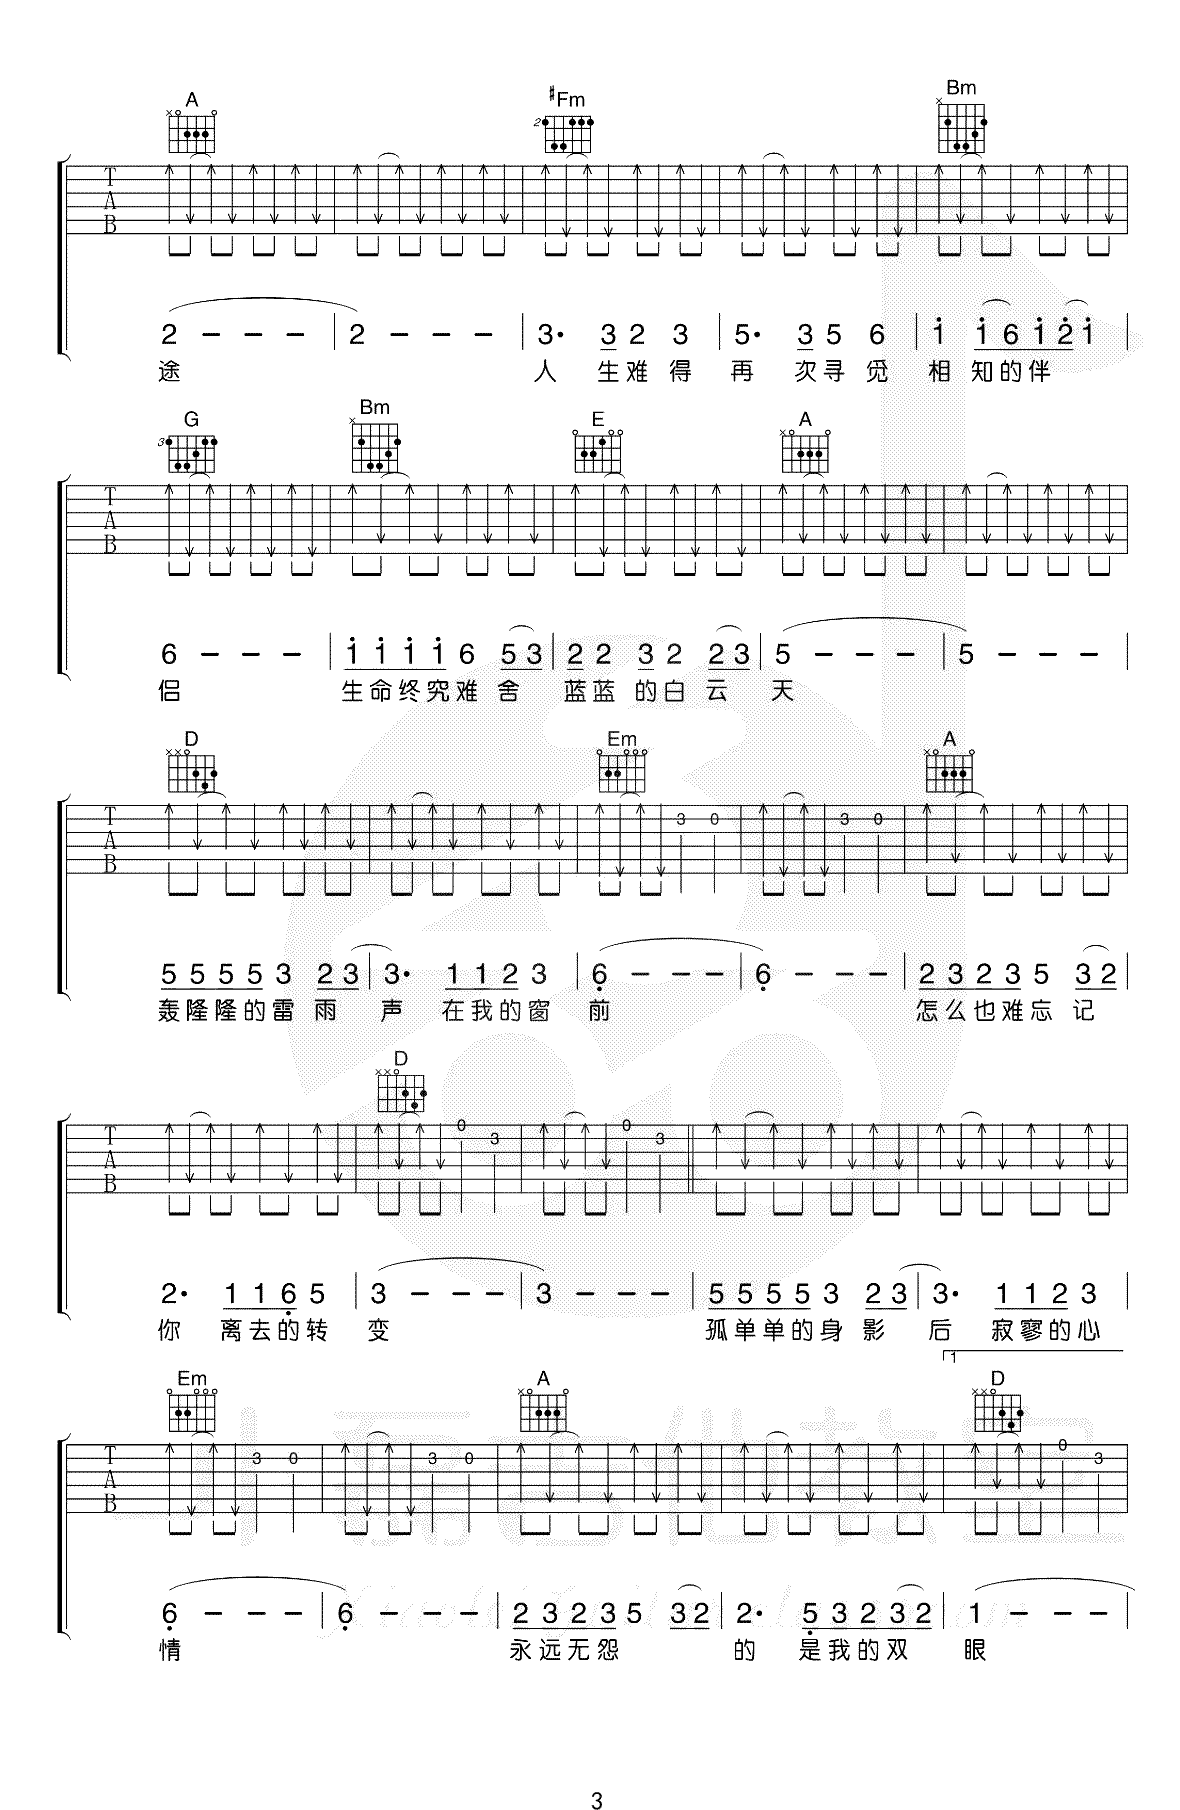 恋曲1990吉他谱,原版罗大佑歌曲,简单D调指弹曲谱,高清六线乐谱教学